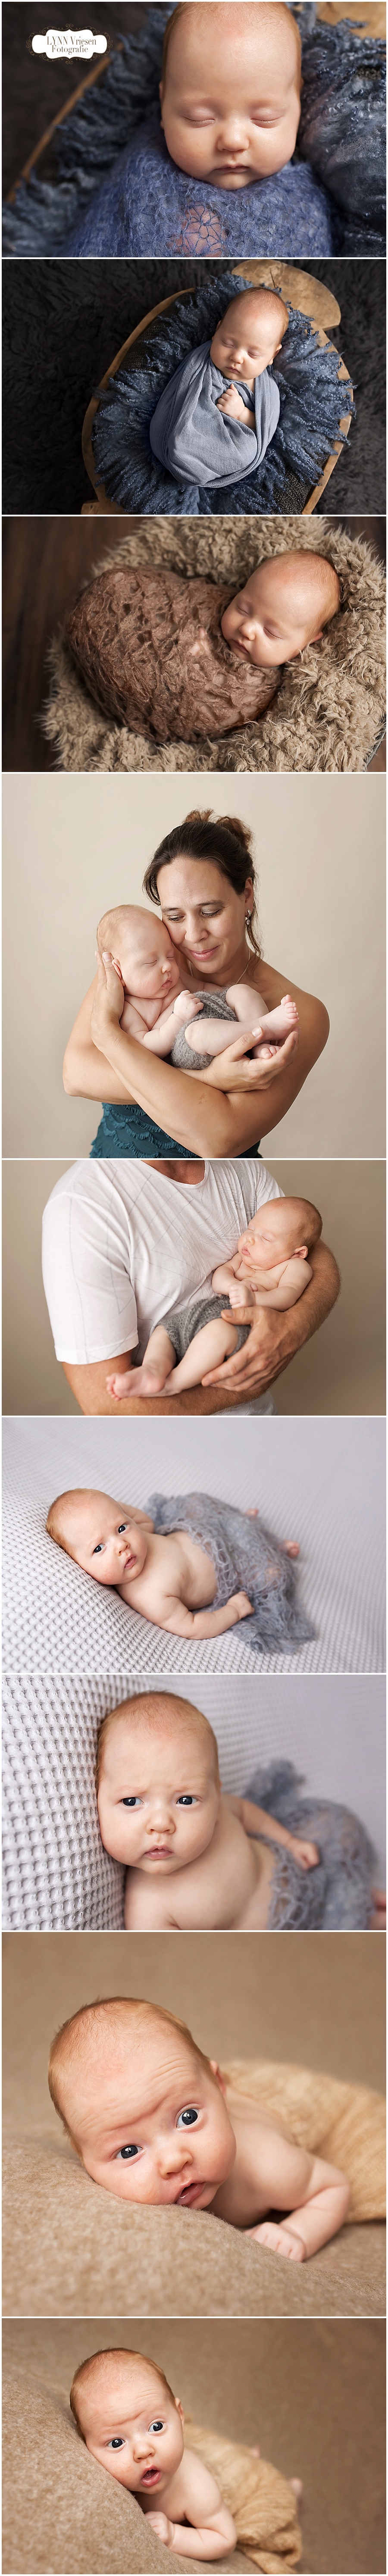 Daan 14 weken - Newborn fotografie Beuningen